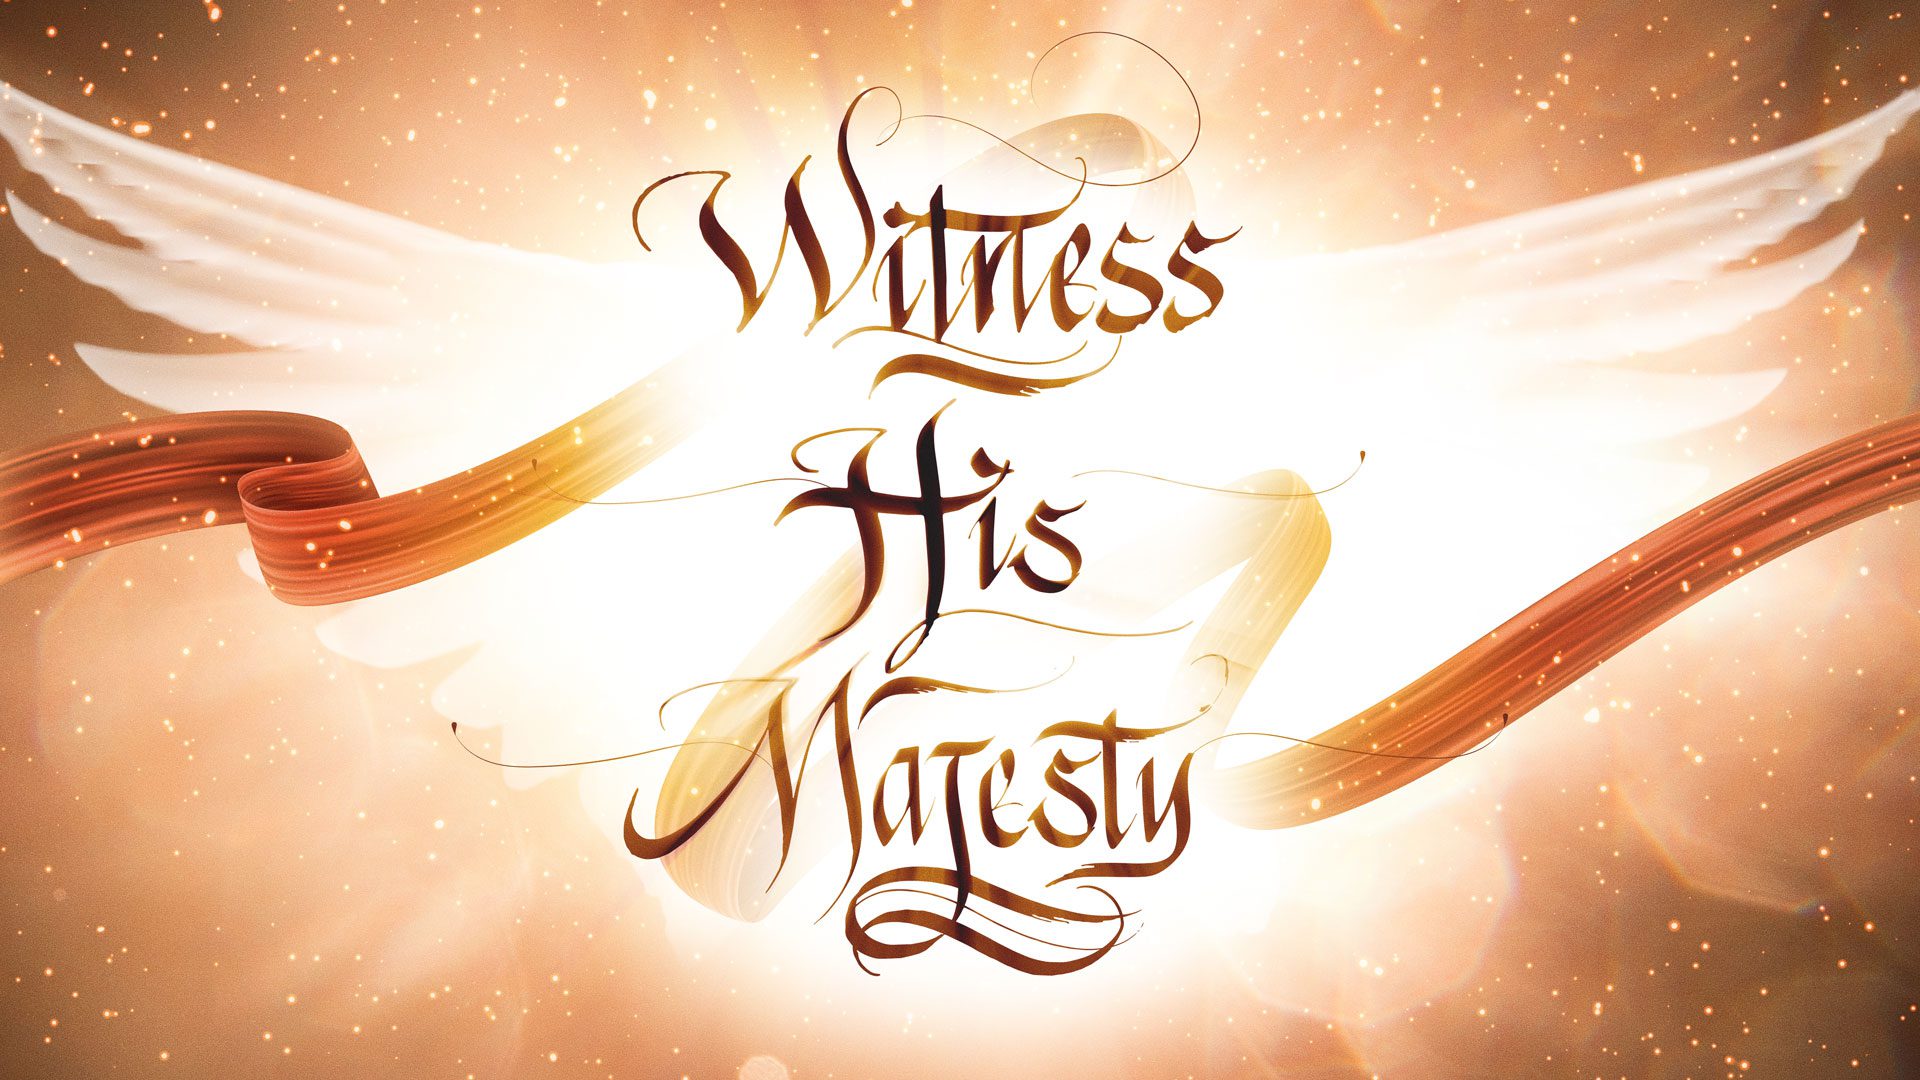 Witness His Majesty